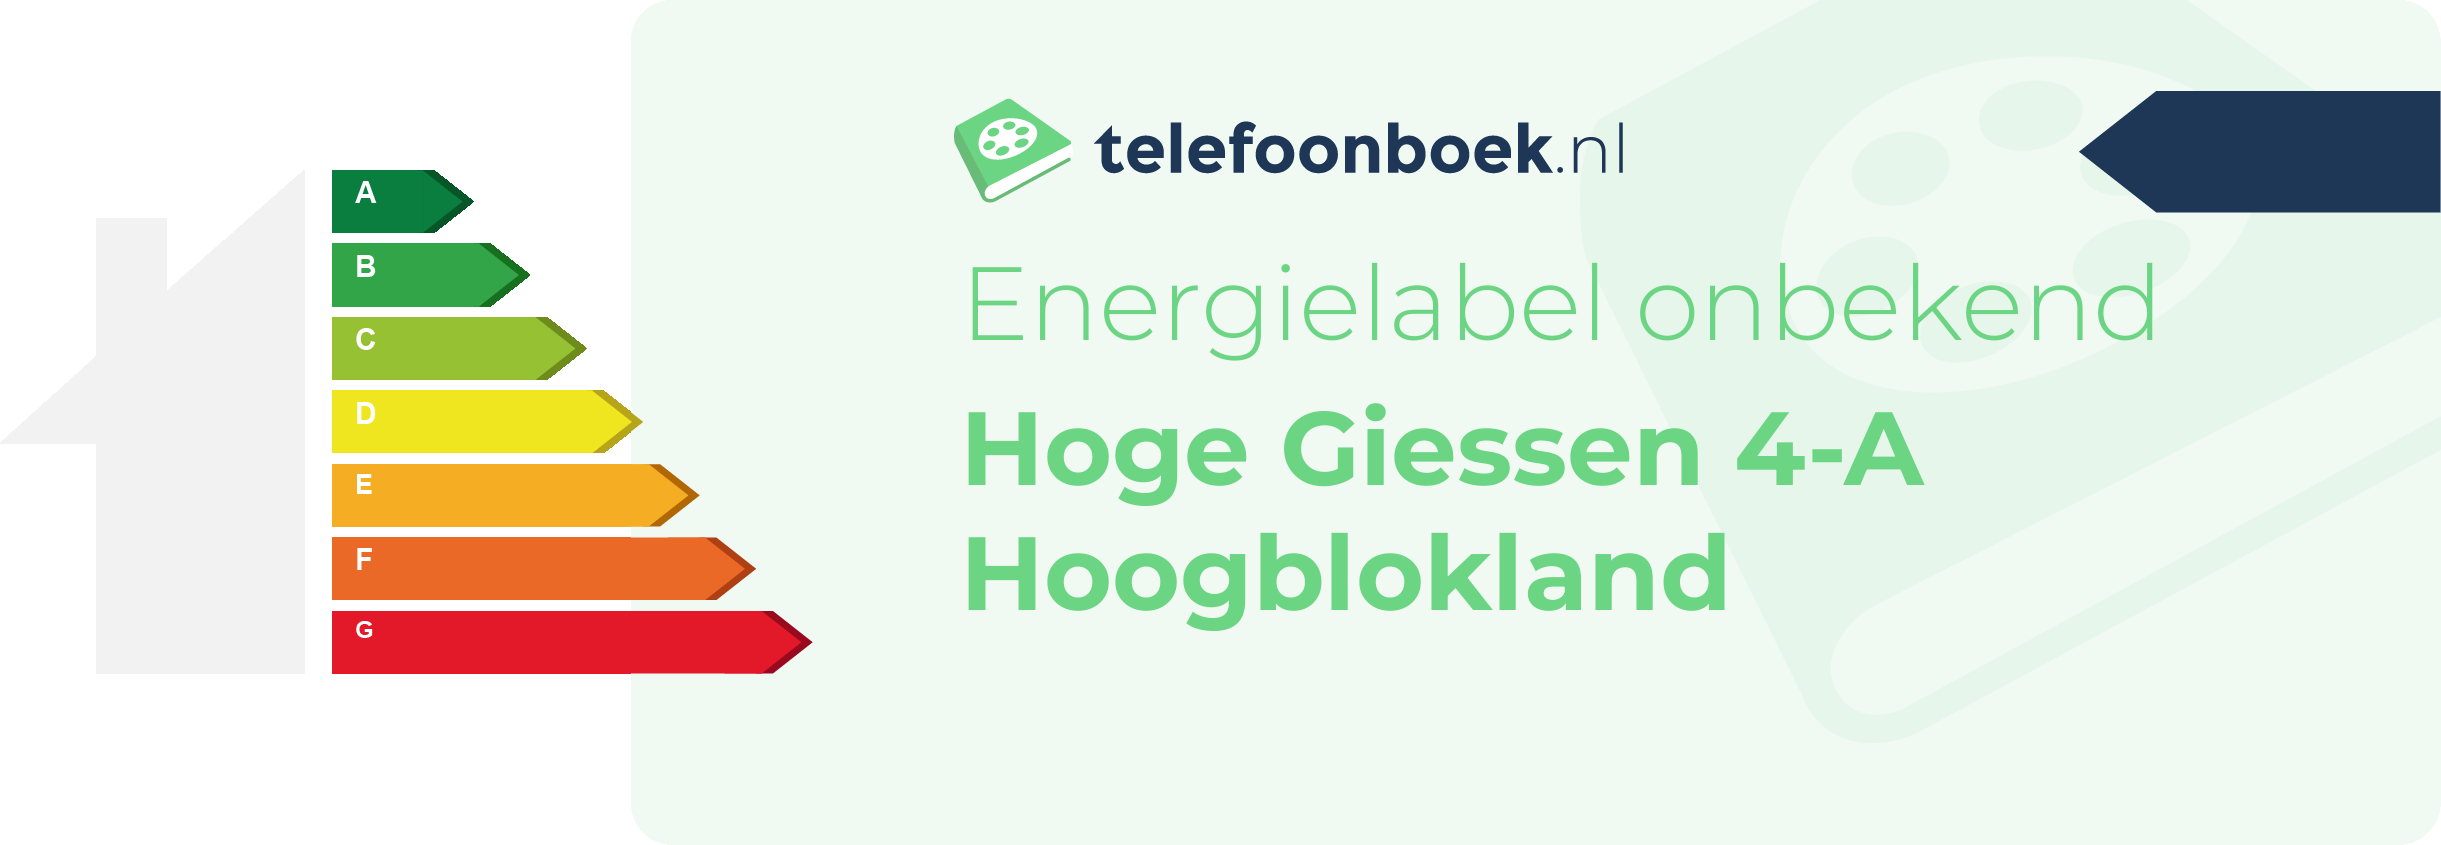 Energielabel Hoge Giessen 4-A Hoogblokland